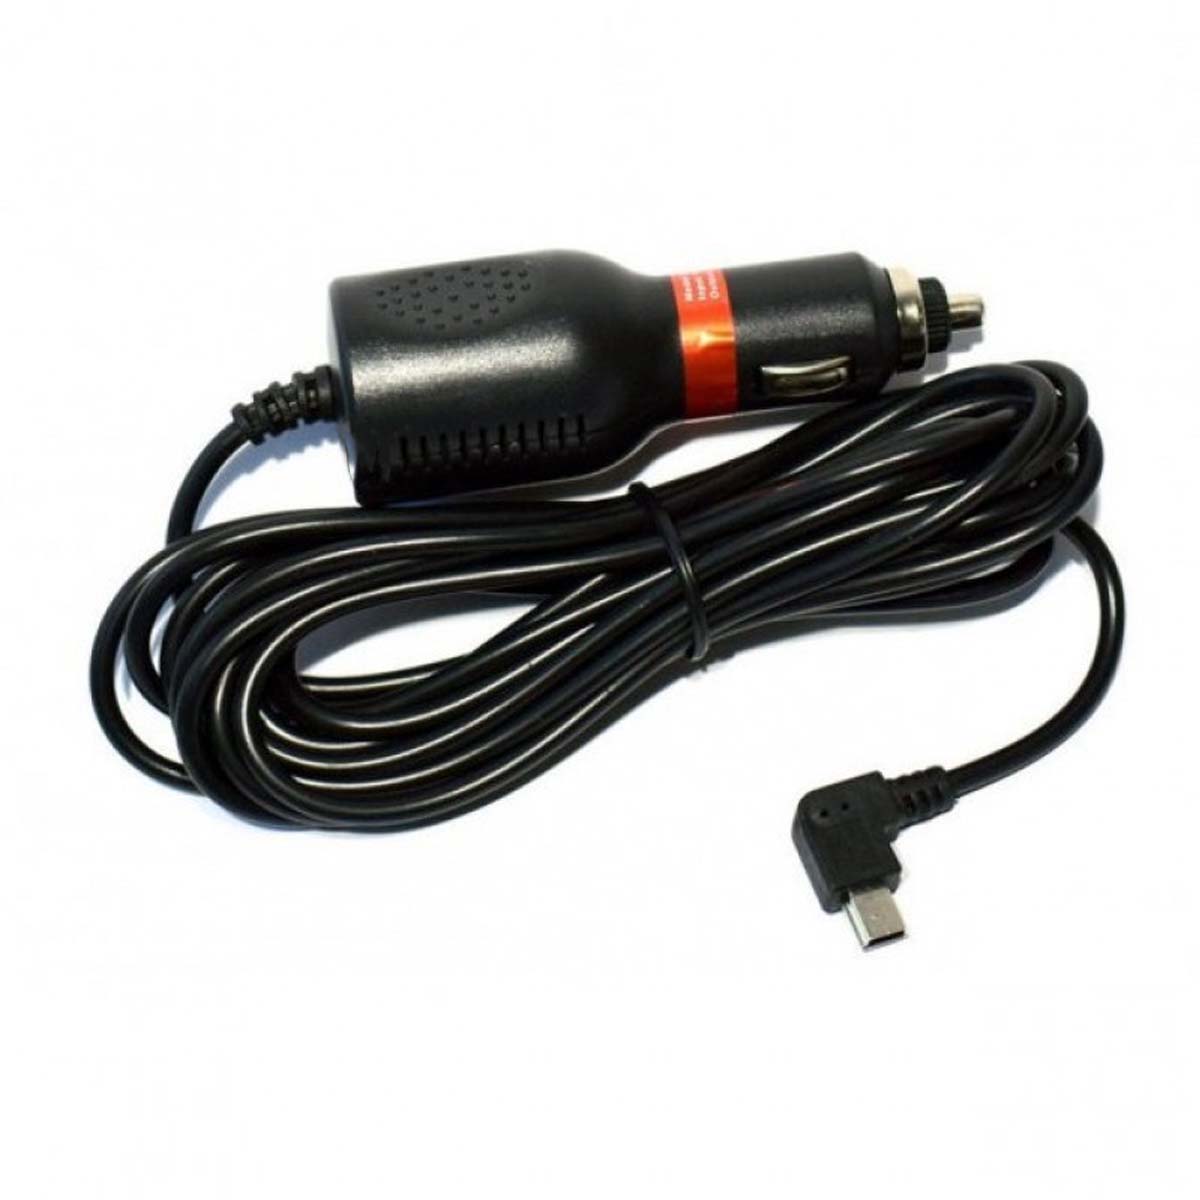 АЗУ (Автомобильное зарядное устройство) LP1 V8 с кабелем Micro USB, длина 3.5 метра, цвет черный